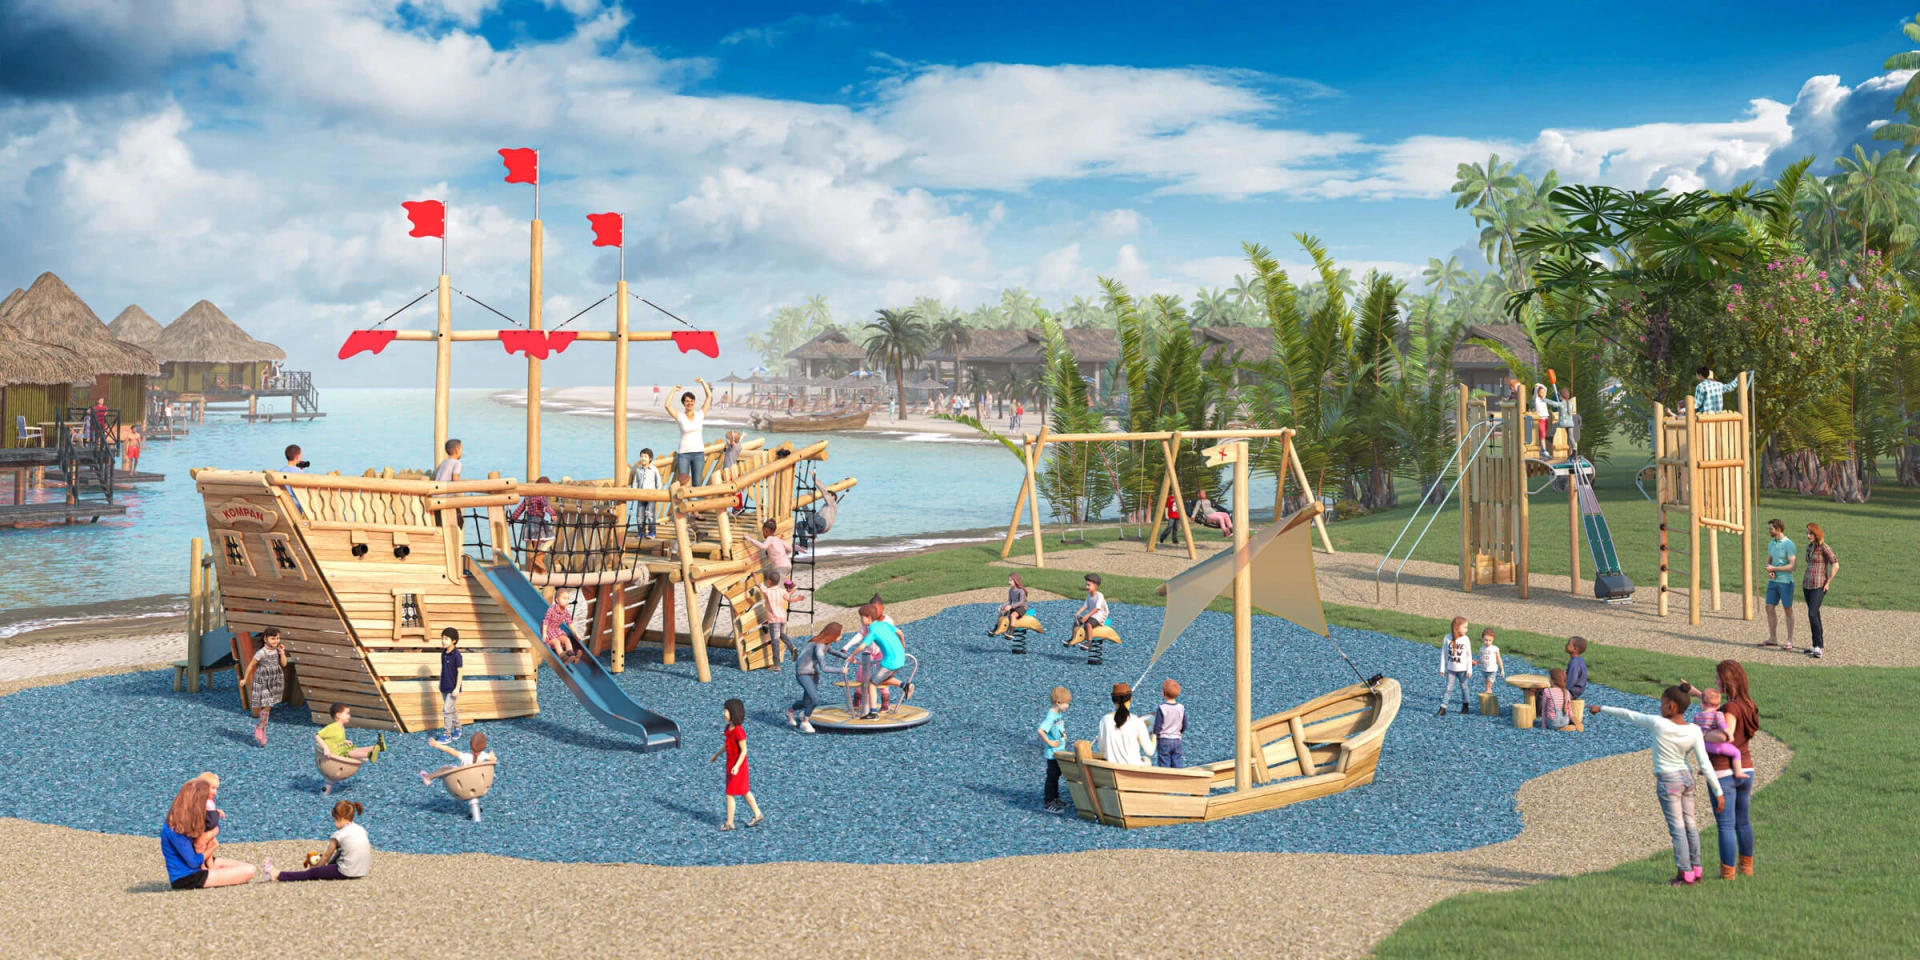 Idée de conception d'une aire de jeux en bois près de la mer sur le thème des pirates